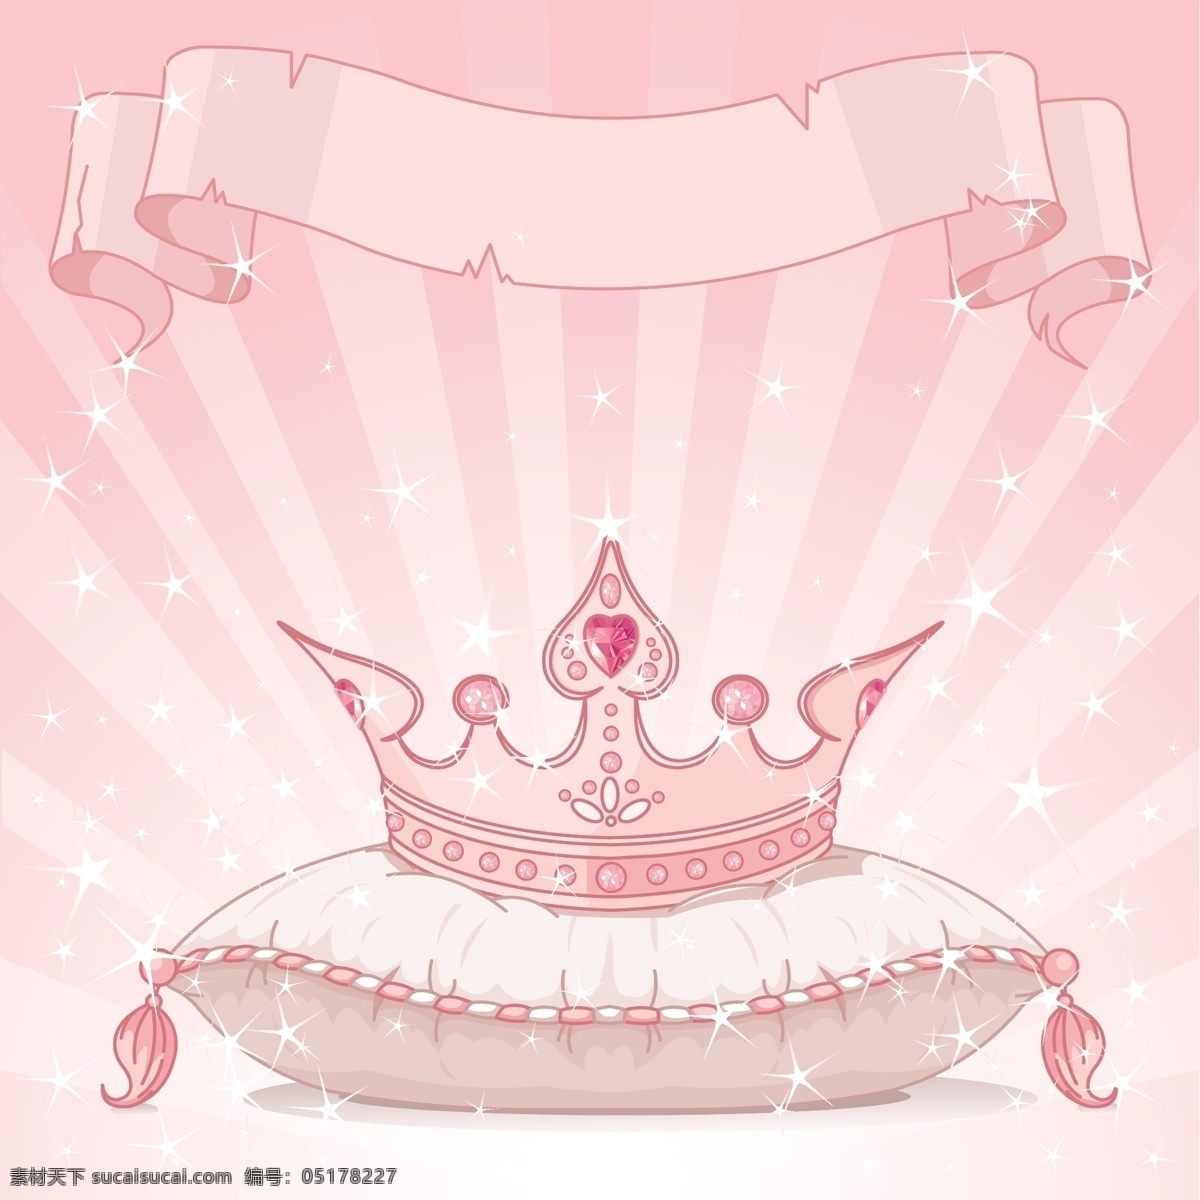 公主头冠粉 公主头冠 皇冠 头冠 粉色 公主 芭比娃娃 中国公主范